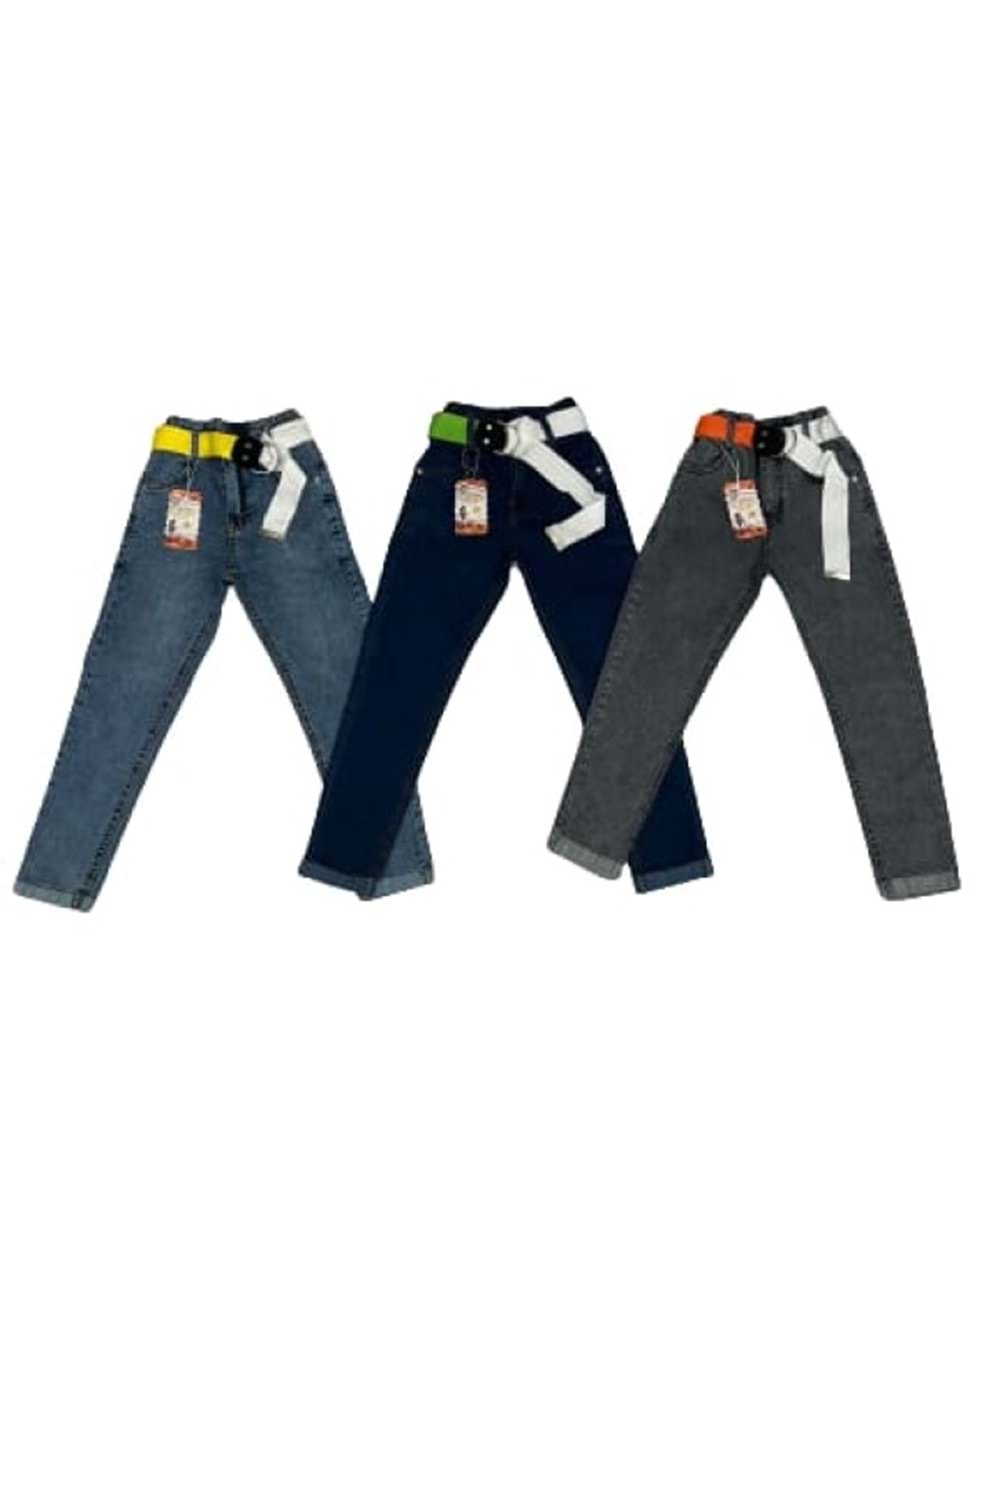 Miya 8109 Çocuk Kız Fosfor Kemeri Lastikli Kot Pantolon - Açık Mavi - ST00261-Açık Mavi-6 YAŞ